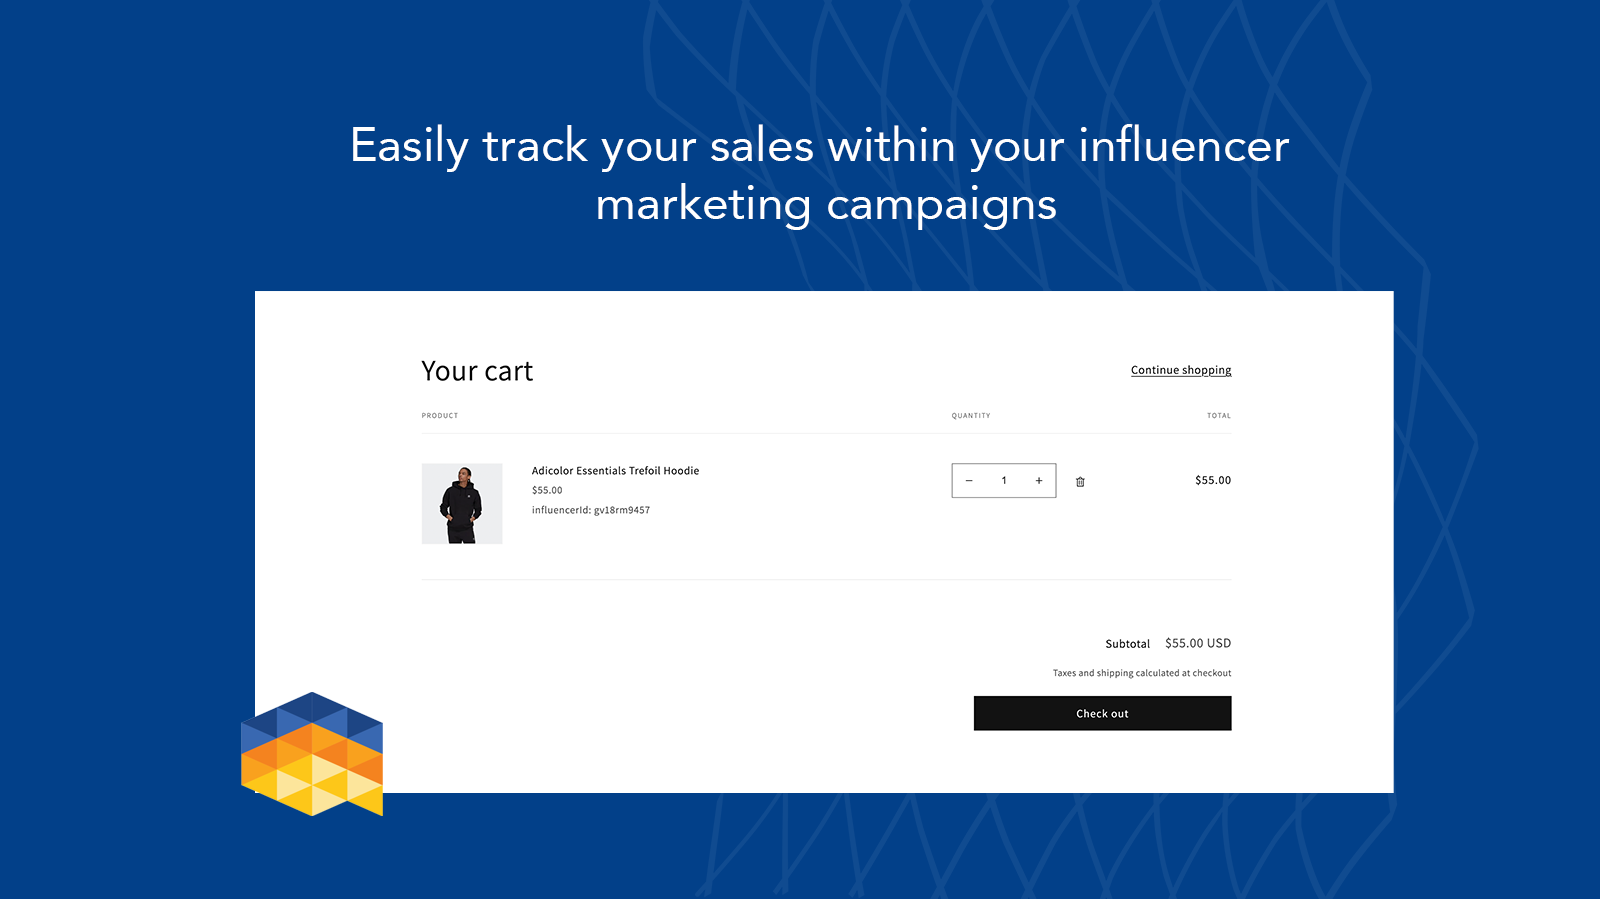 Verfolgen Sie ganz einfach Ihre Verkäufe innerhalb Ihrer Influencer-Marketing-Kampagne